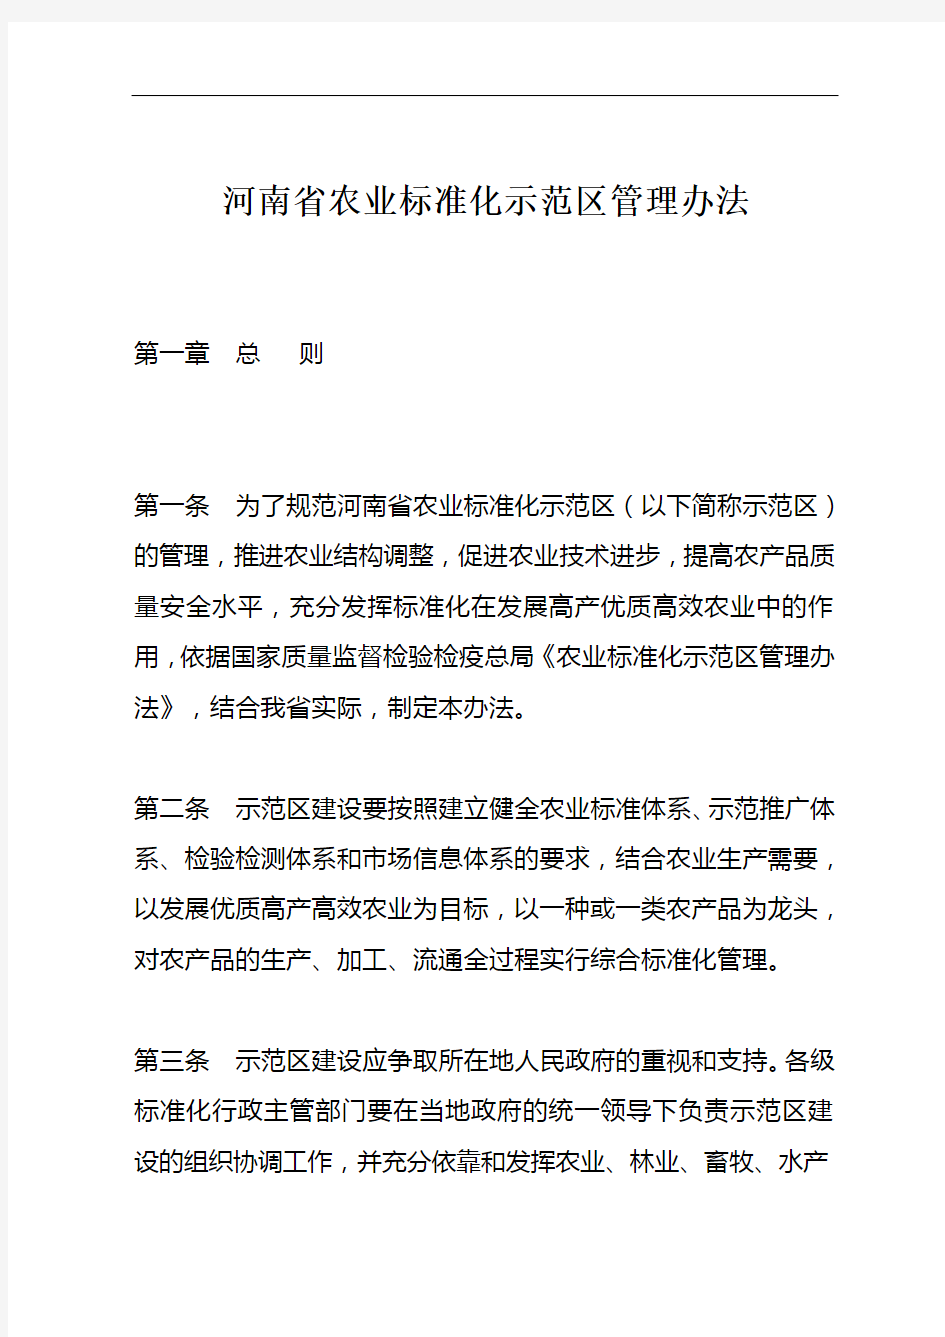 河南省农业标准化示范区管理办法